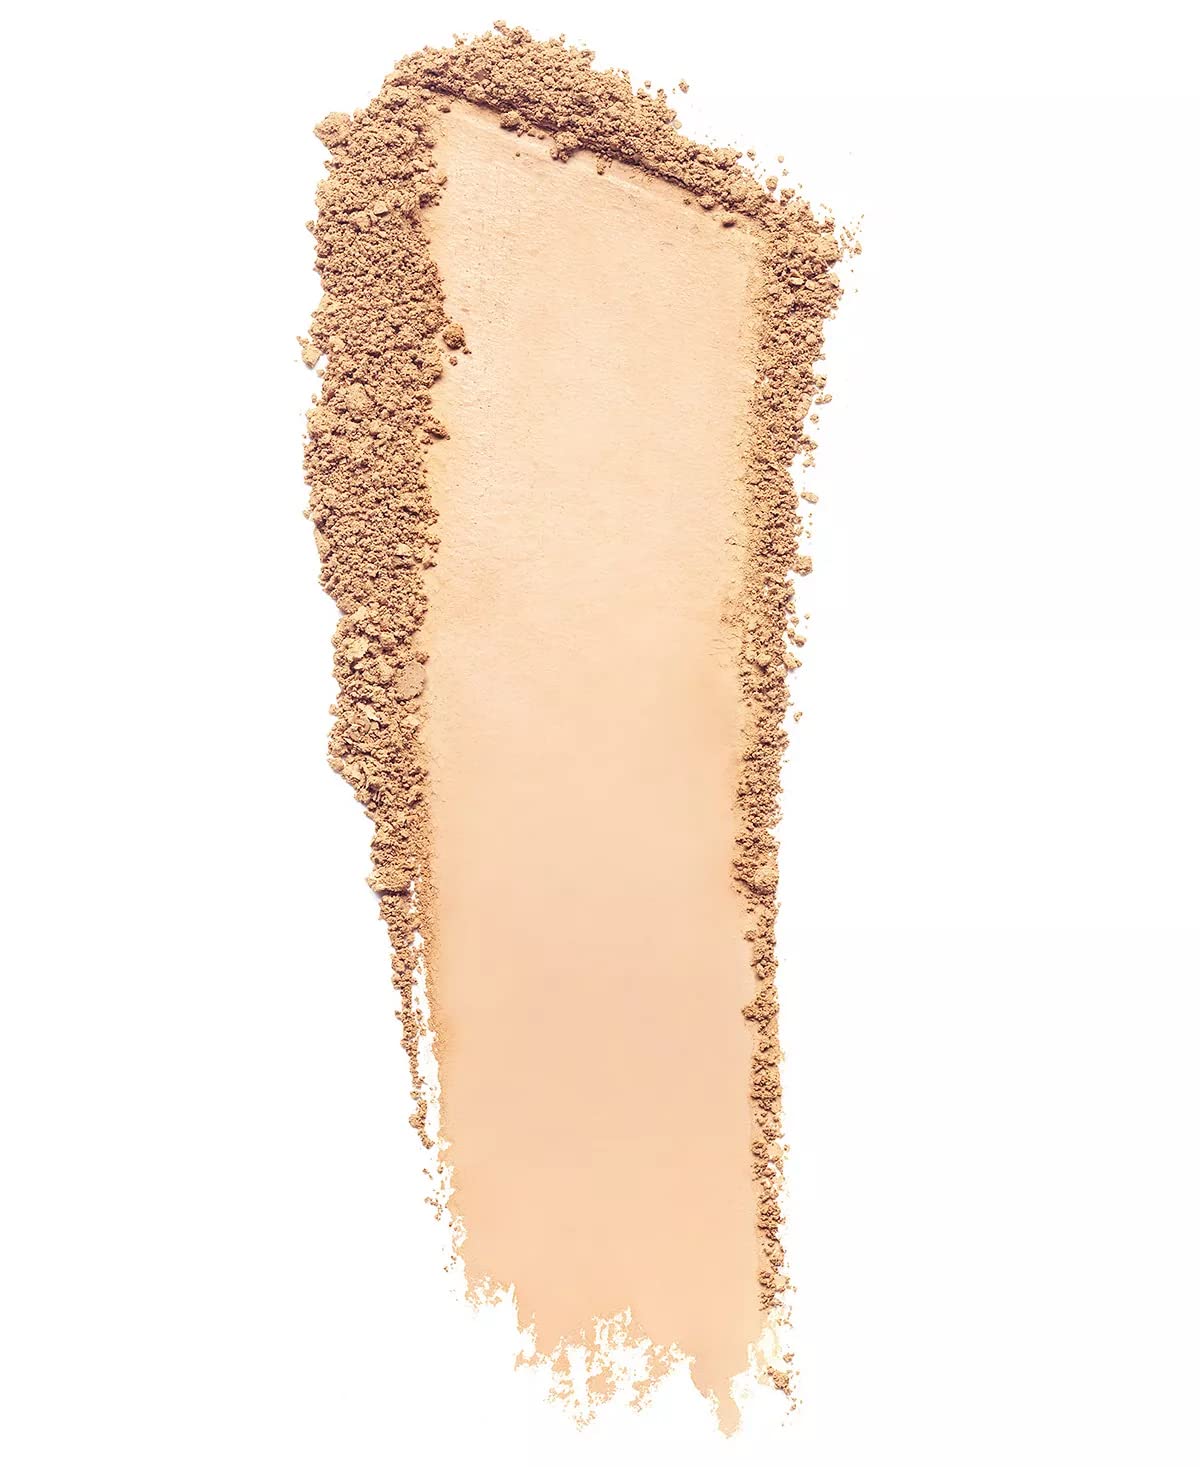 Estee Lauder Double Wear Stay-In-Place Matte Powder Foundation, 3N1 Ivory Beige, 0.42 oz Full Size